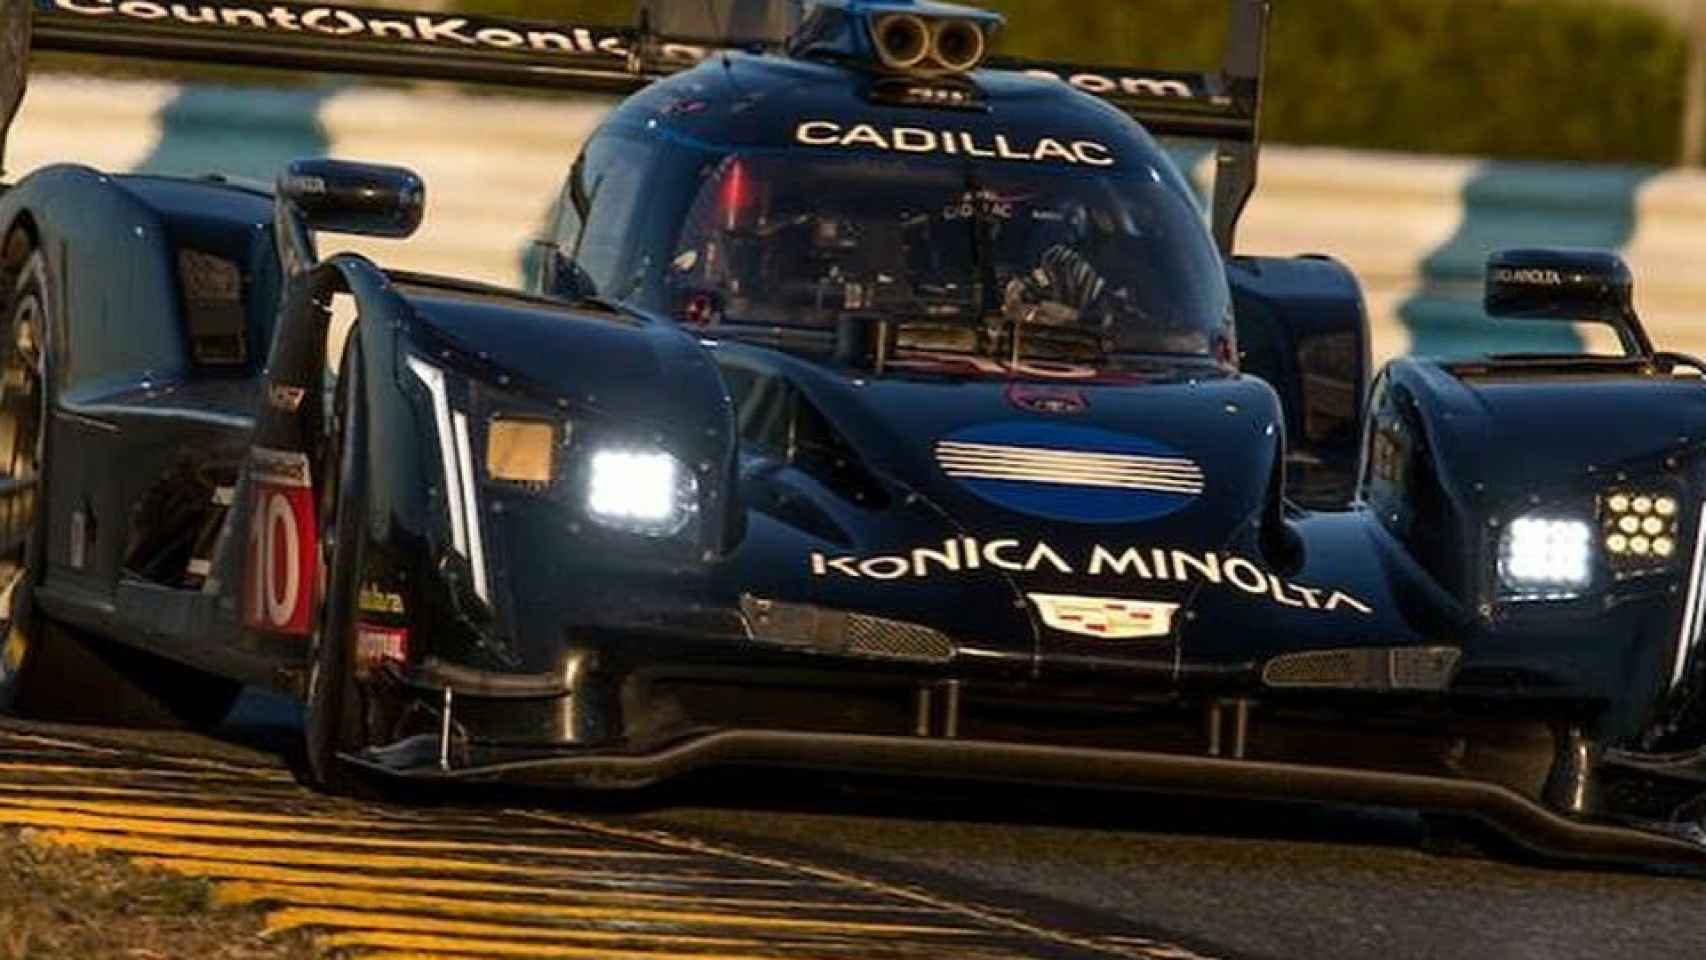 Konica Minolta Cadillac DPi-V.R, el coche de Fernando Alonso en las 24 Horas de Daytona Foto: Instagram (waynetaylorracing)